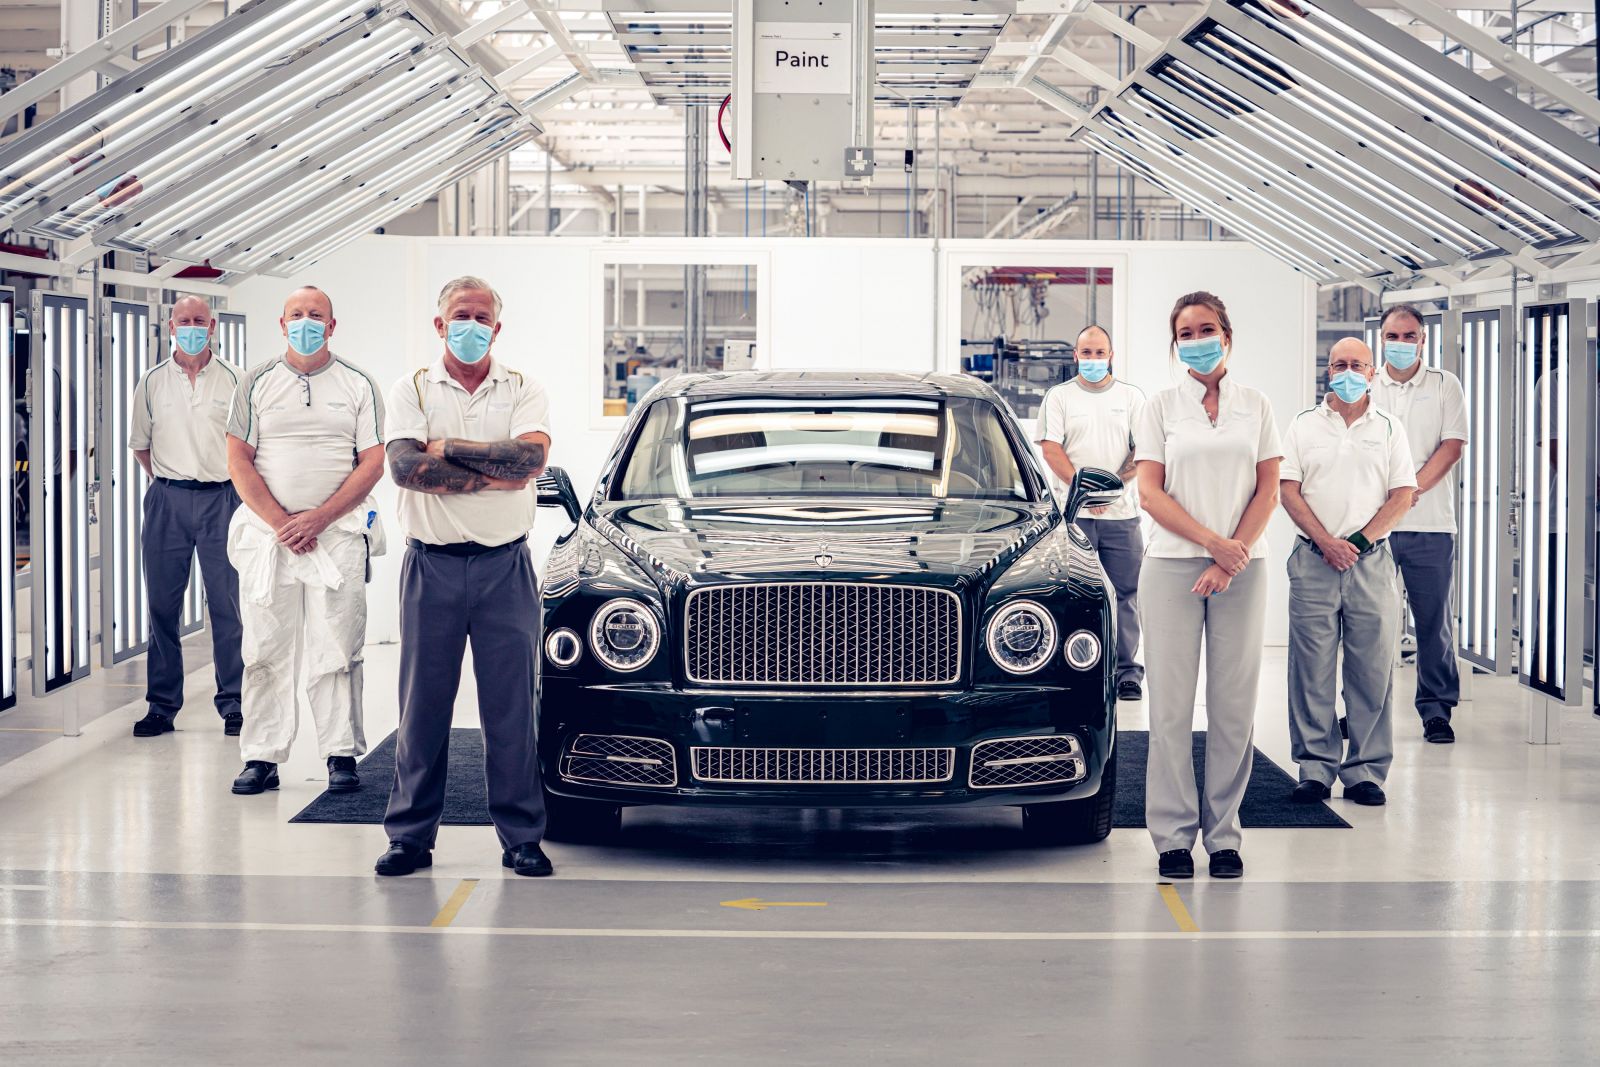 Uzatvára sa ďalšia kapitola. Bentley vyrobilo posledný Mulsanne aj slávnu 6,75-litrovú V8-čku